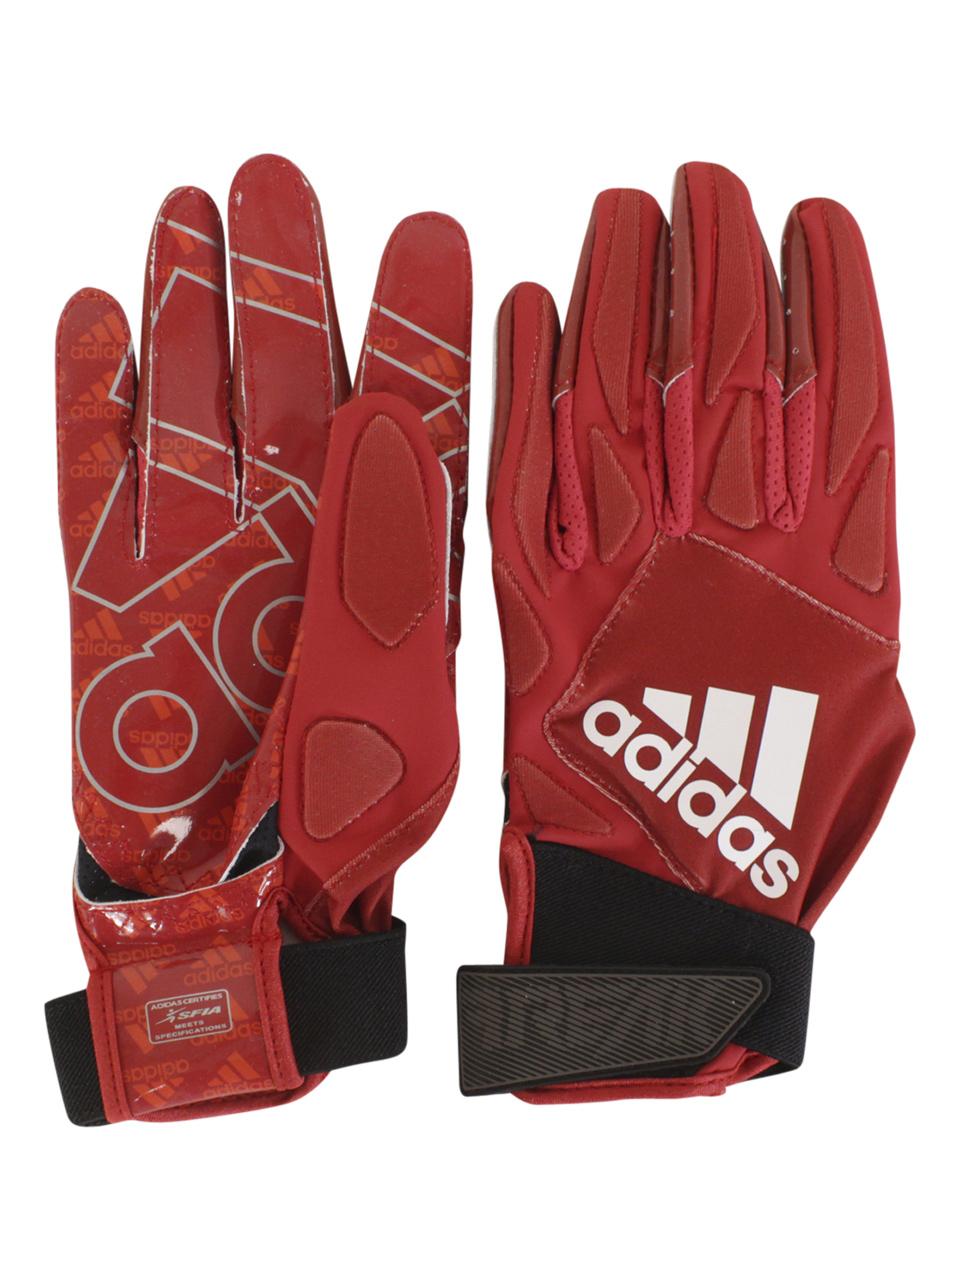 Freak-4.0 Football Lineman Gloves